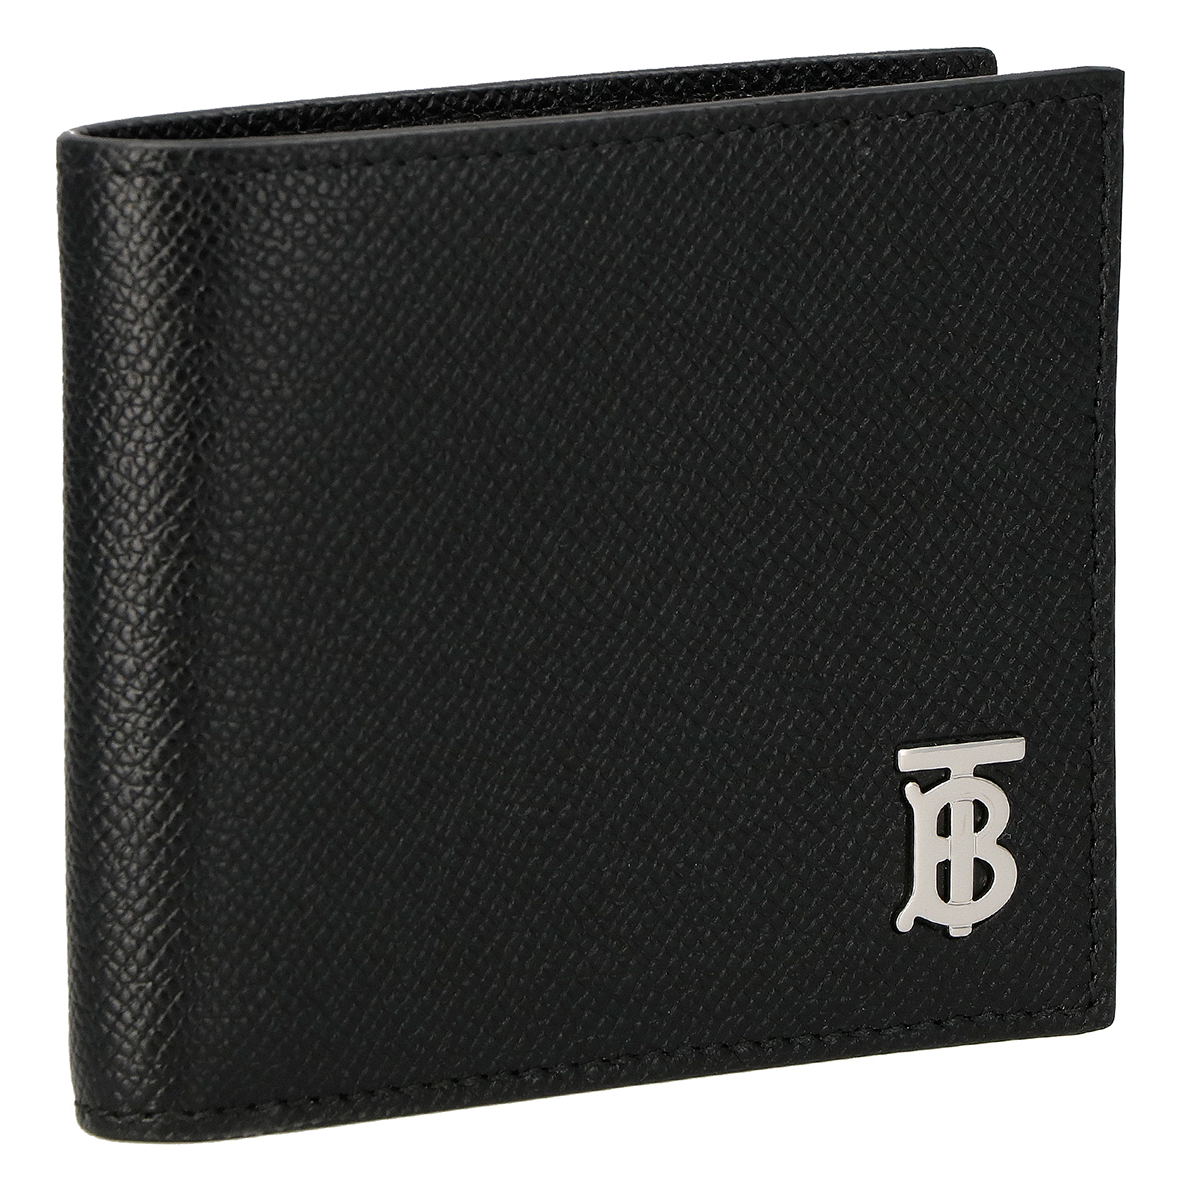 バーバリー BURBERRY 財布 二つ折り財布 折りたたみ財布 小銭入れ付き 8062680-A1189 メンズ ブラック 財布 使いやすい ブランド 小さめ